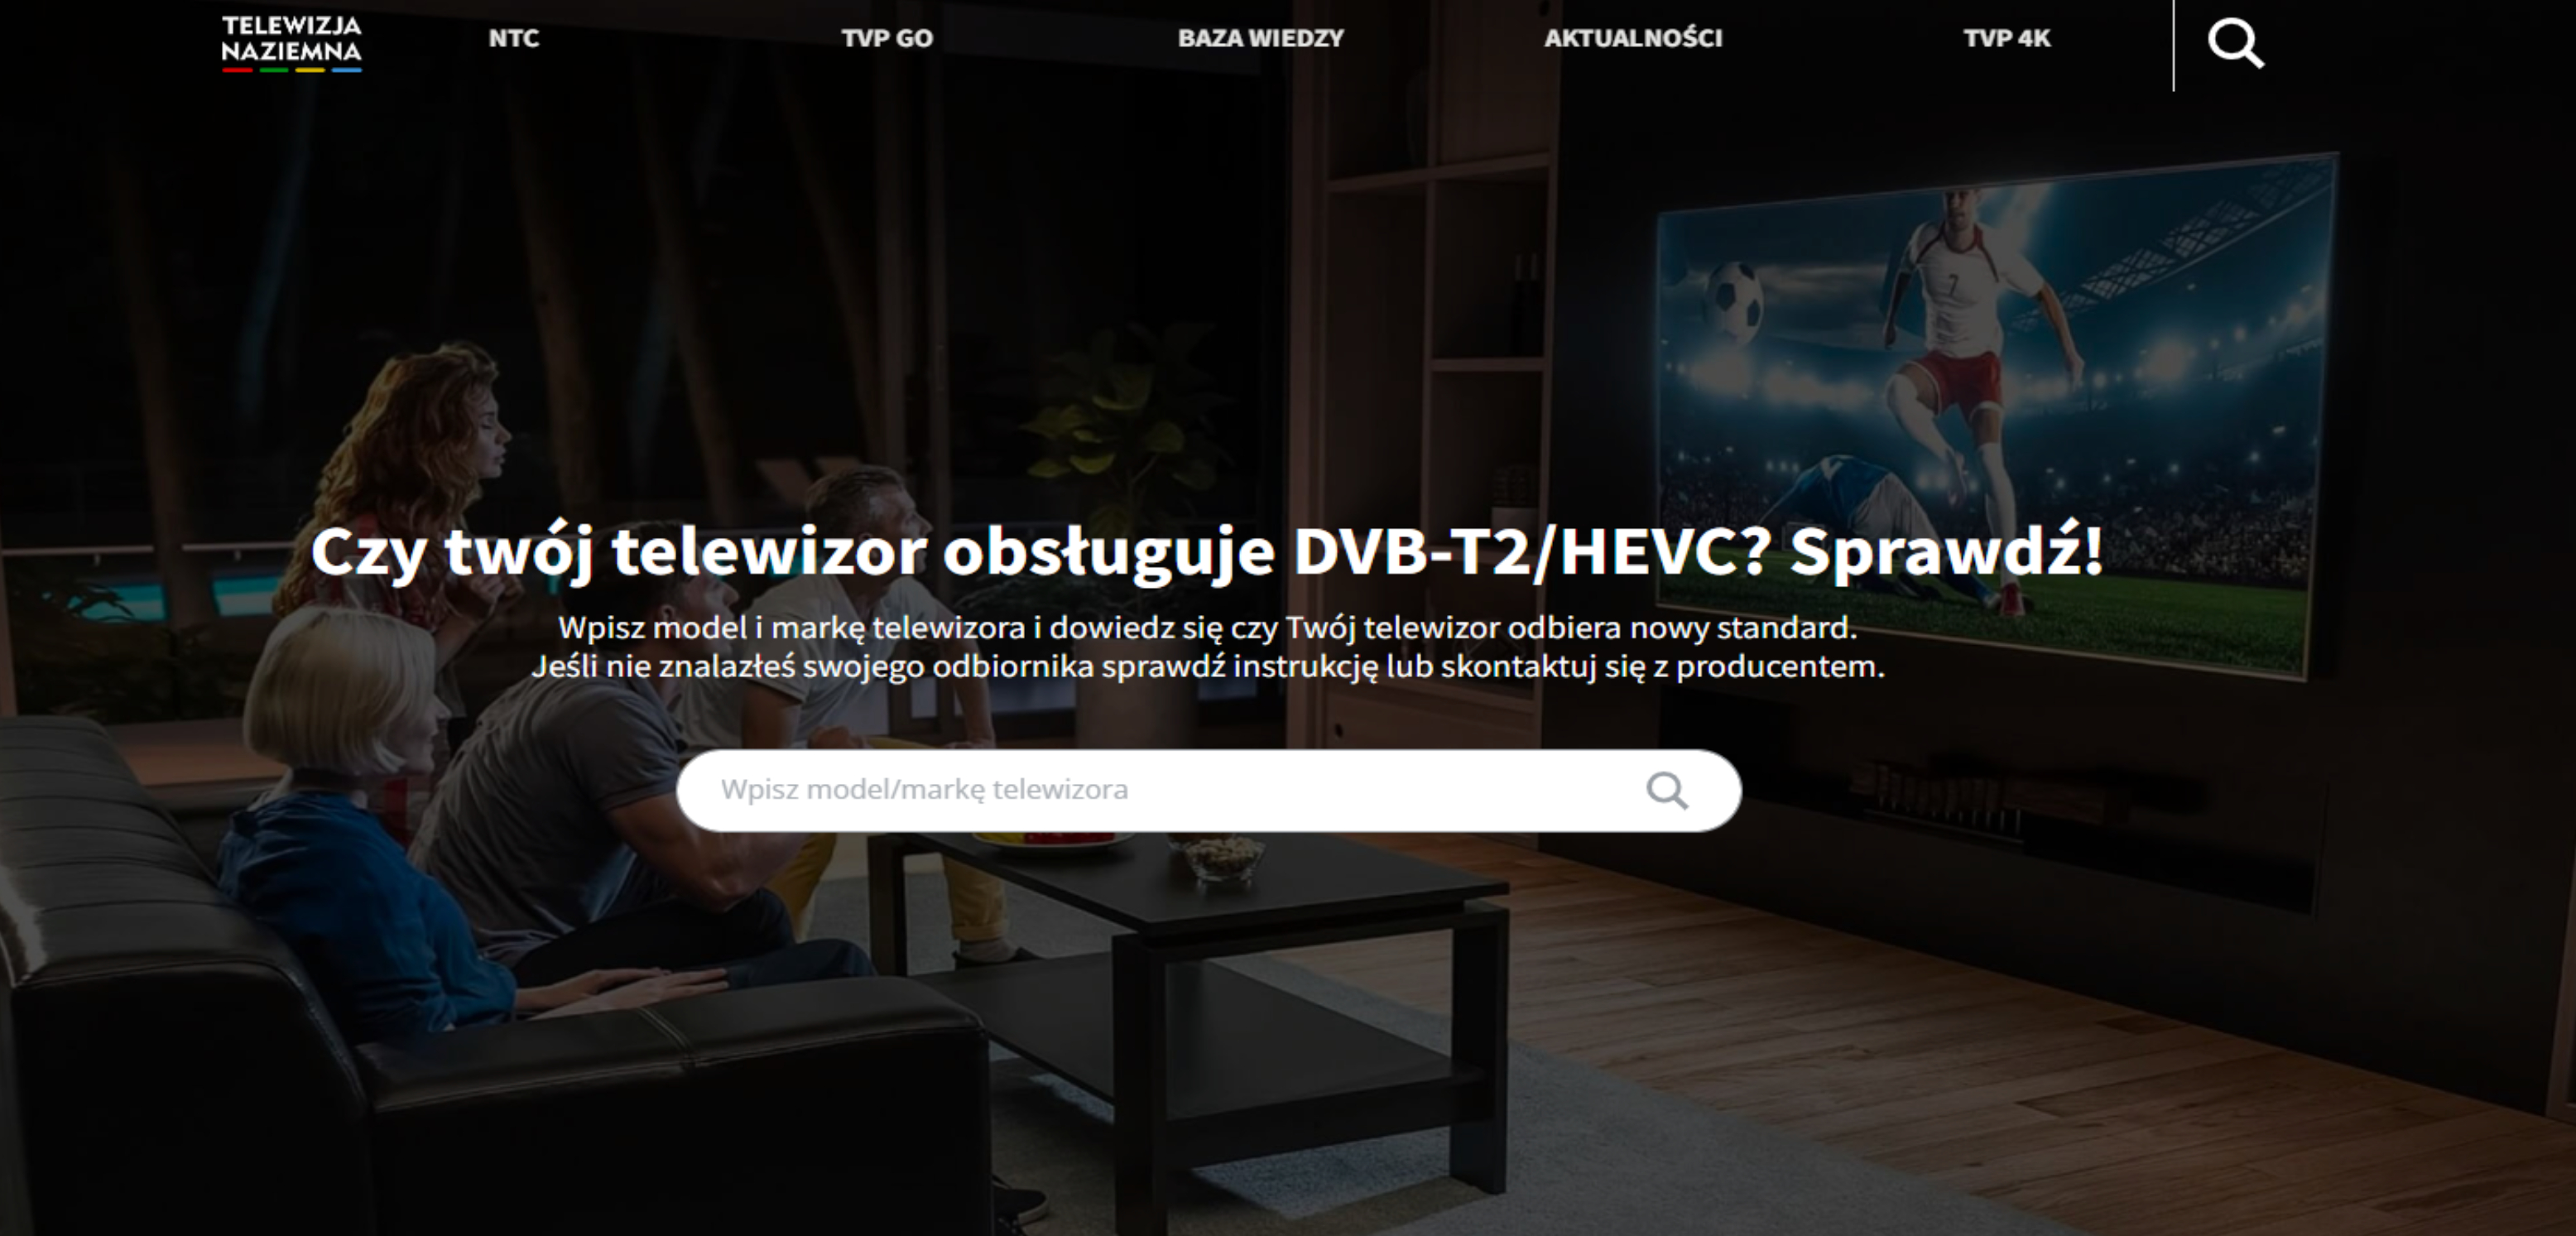 DVB-T2/HEVC (H.265) – sprawdź, czy twój telewizor ma to oznaczenie!